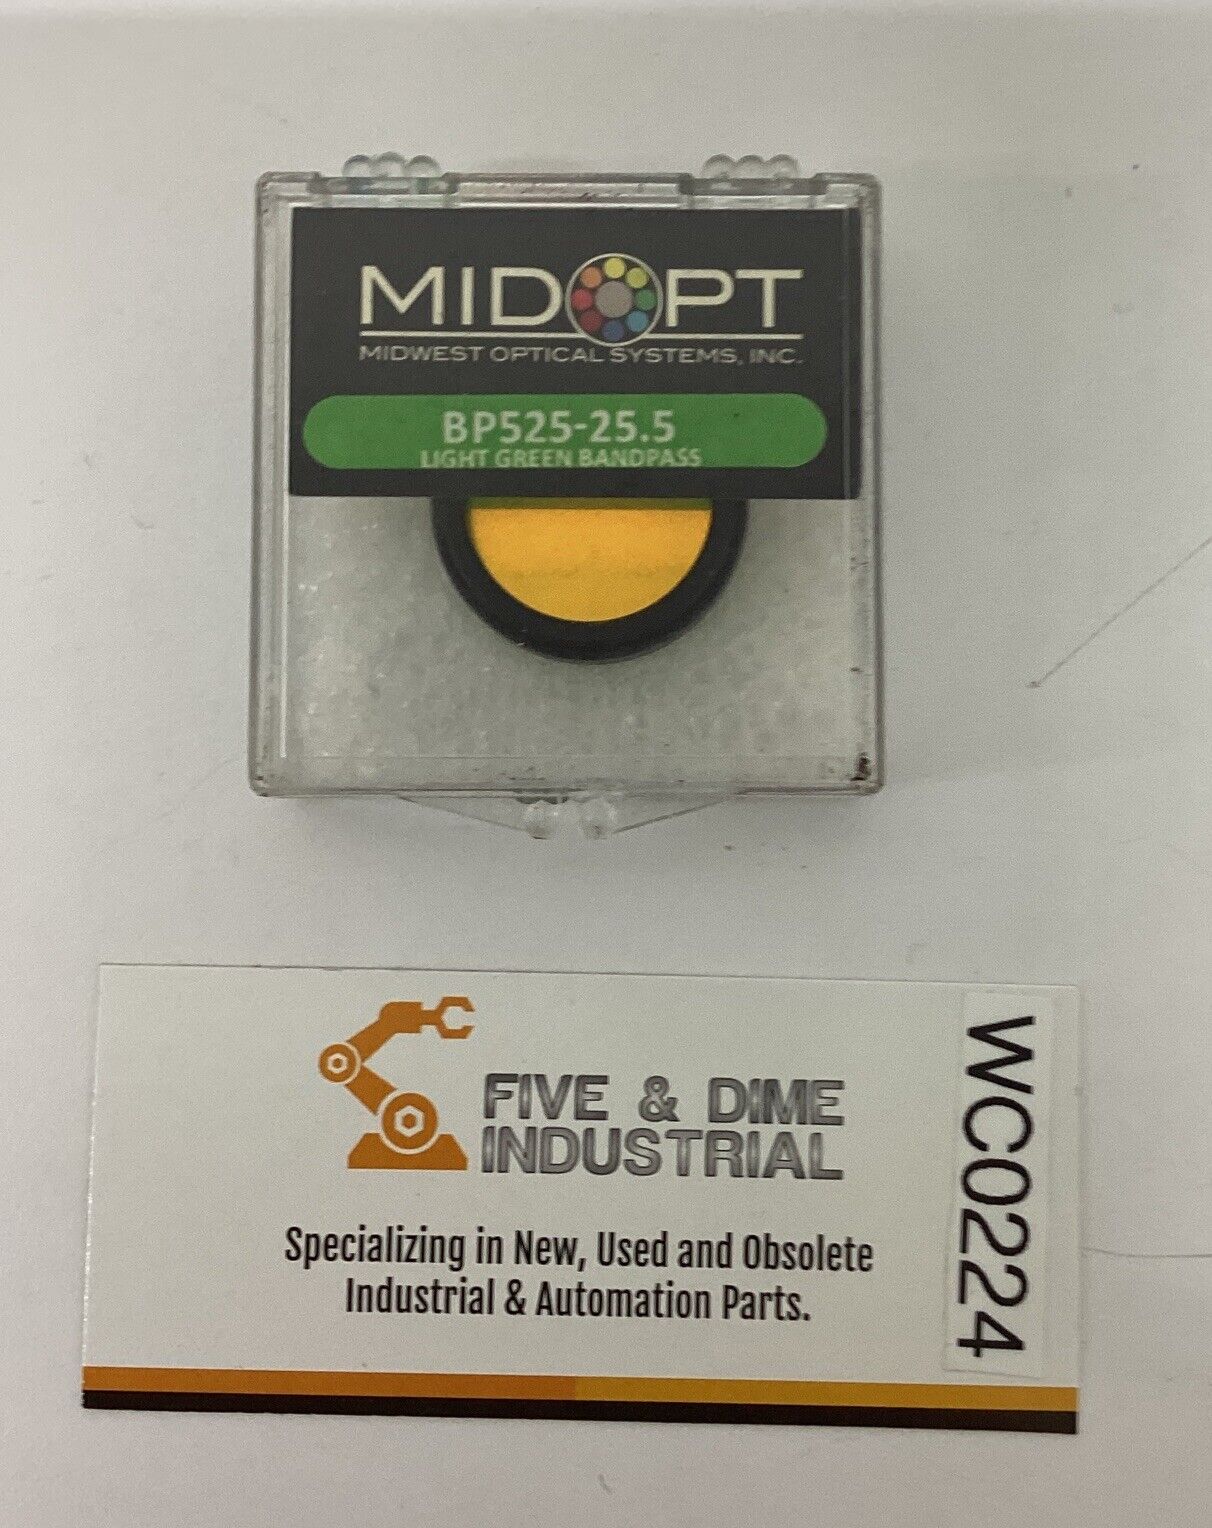 Midwest Optical BP525-25.5 Light Green Bandpass Filter (BL272)